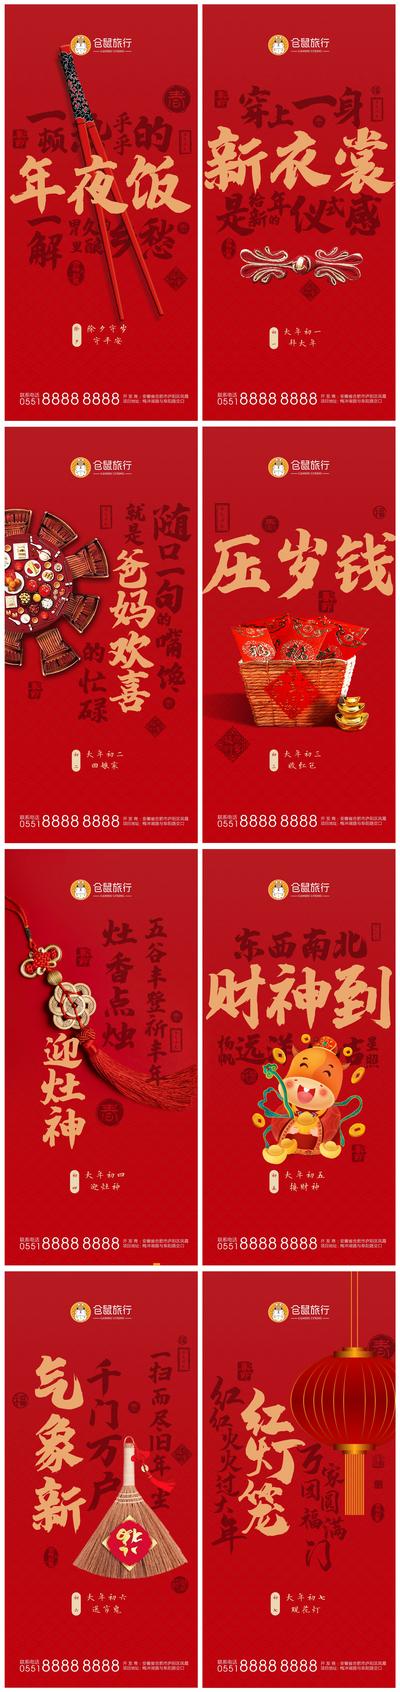 【南门网】海报 中国传统节日 春节 新年 除夕 年夜饭  初一 初七 拜年 年俗 系列